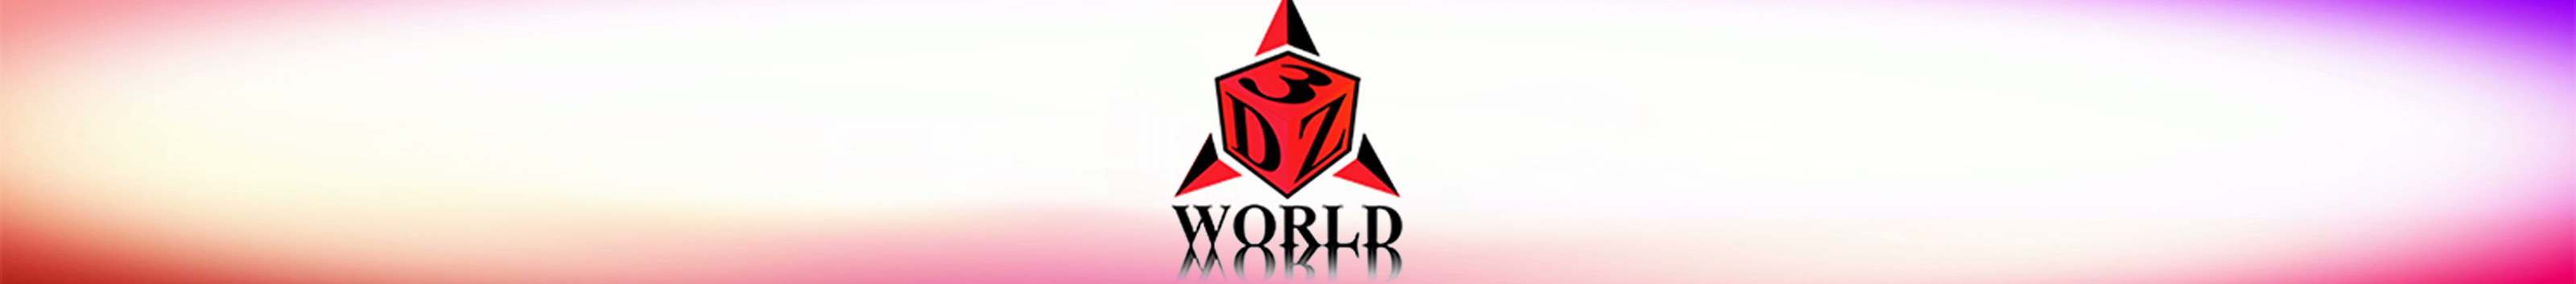 Banner de perfil de 3DZ WORLD